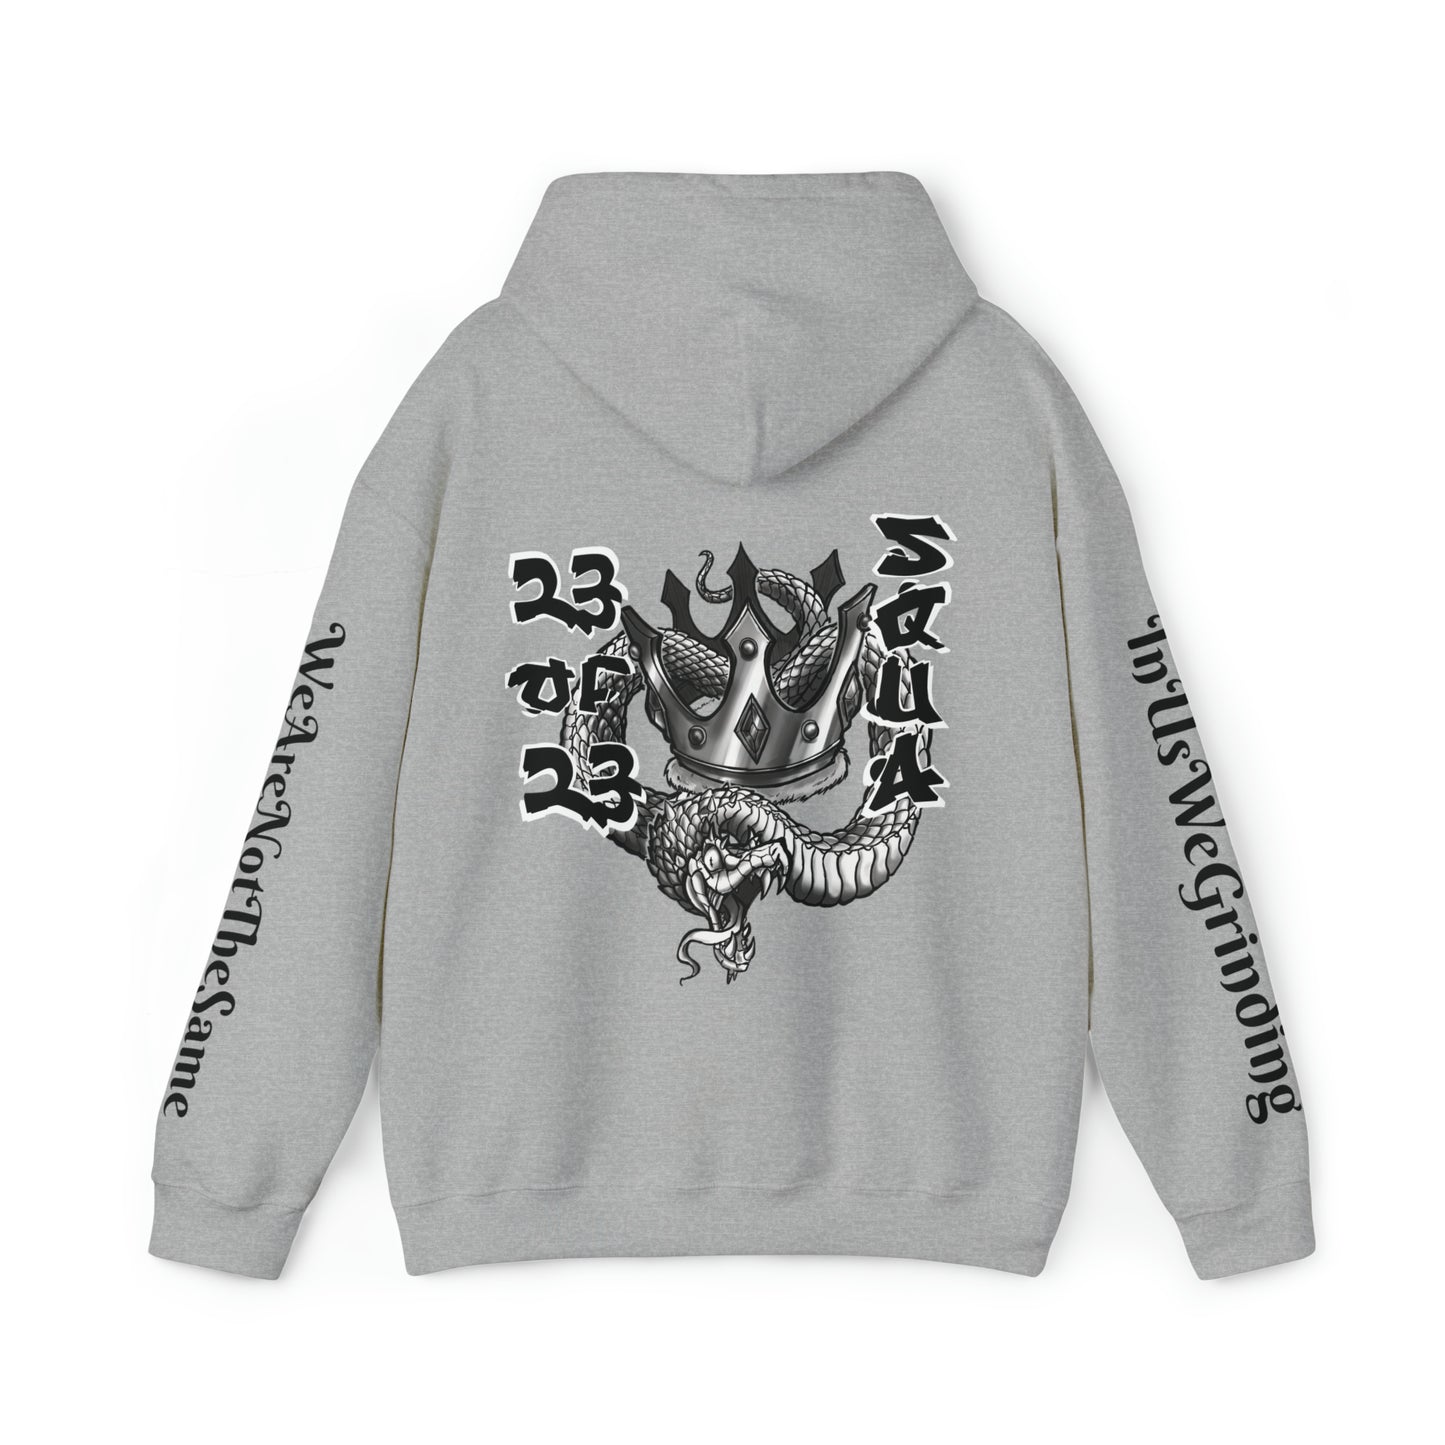 Crown Me King™ Hooded Sweatshirt